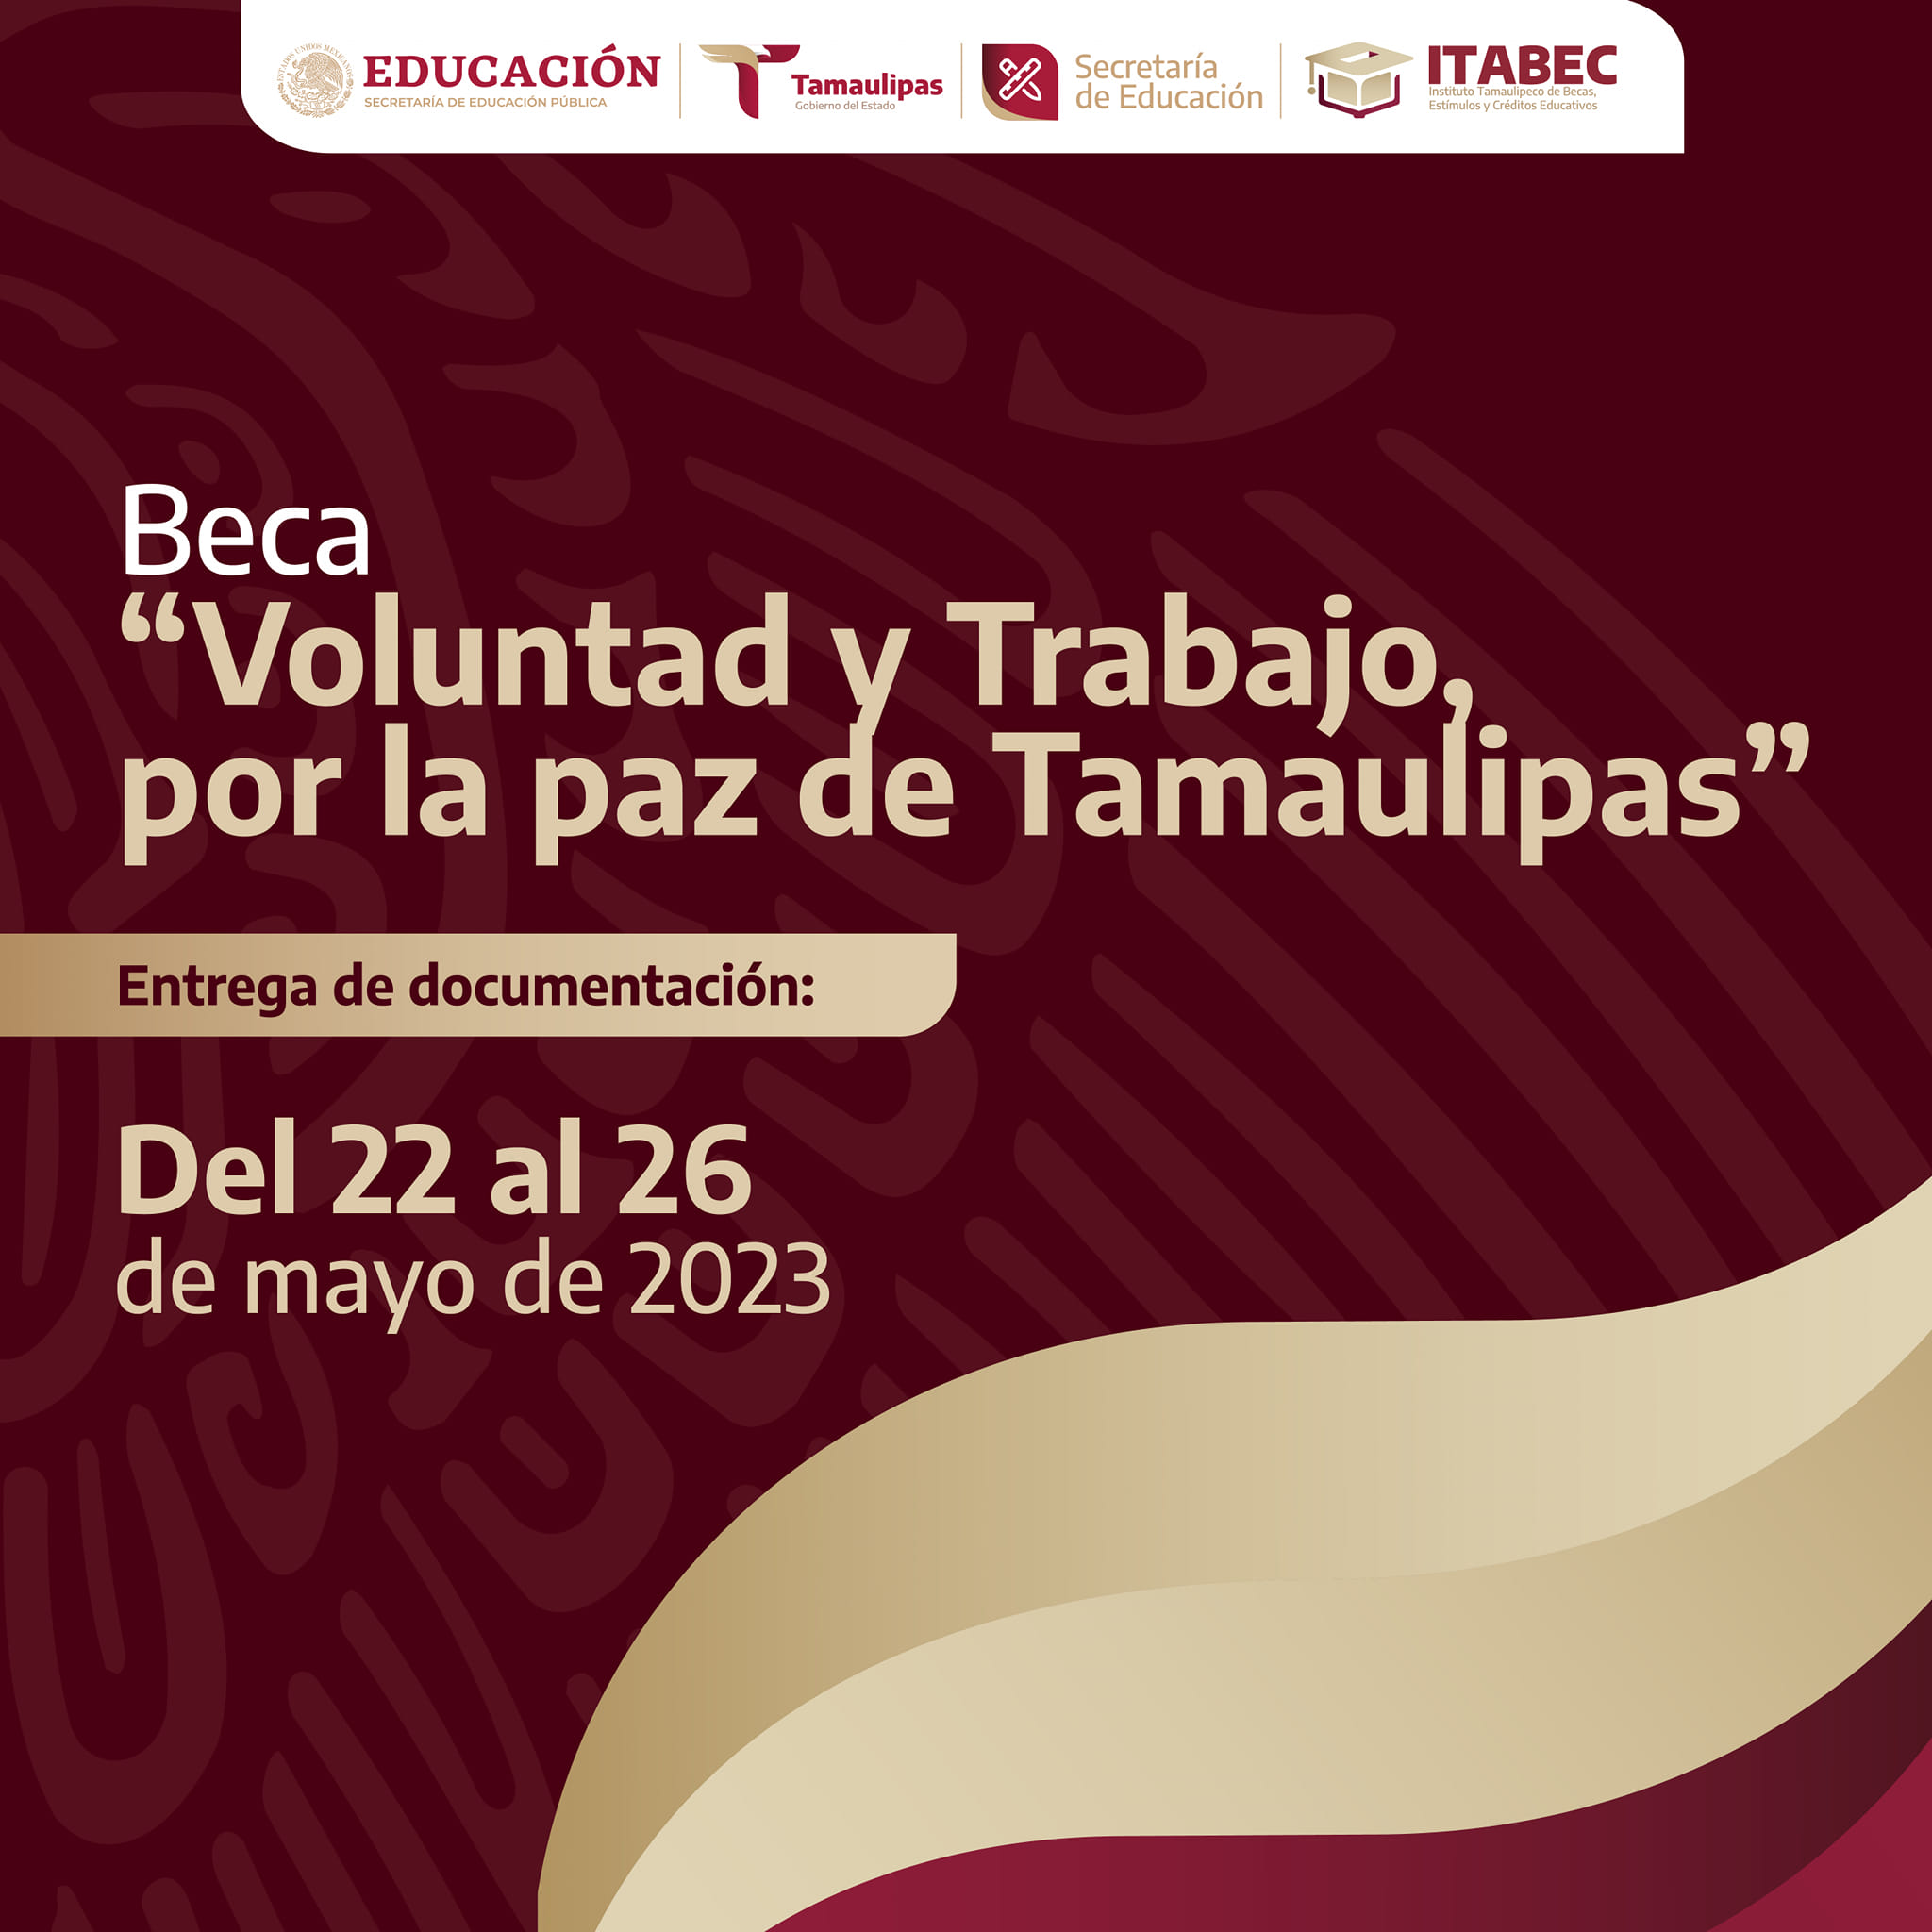 Convoca Tamaulipas y la SET a Beca “Voluntad y Trabajo por la paz de Tamaulipas